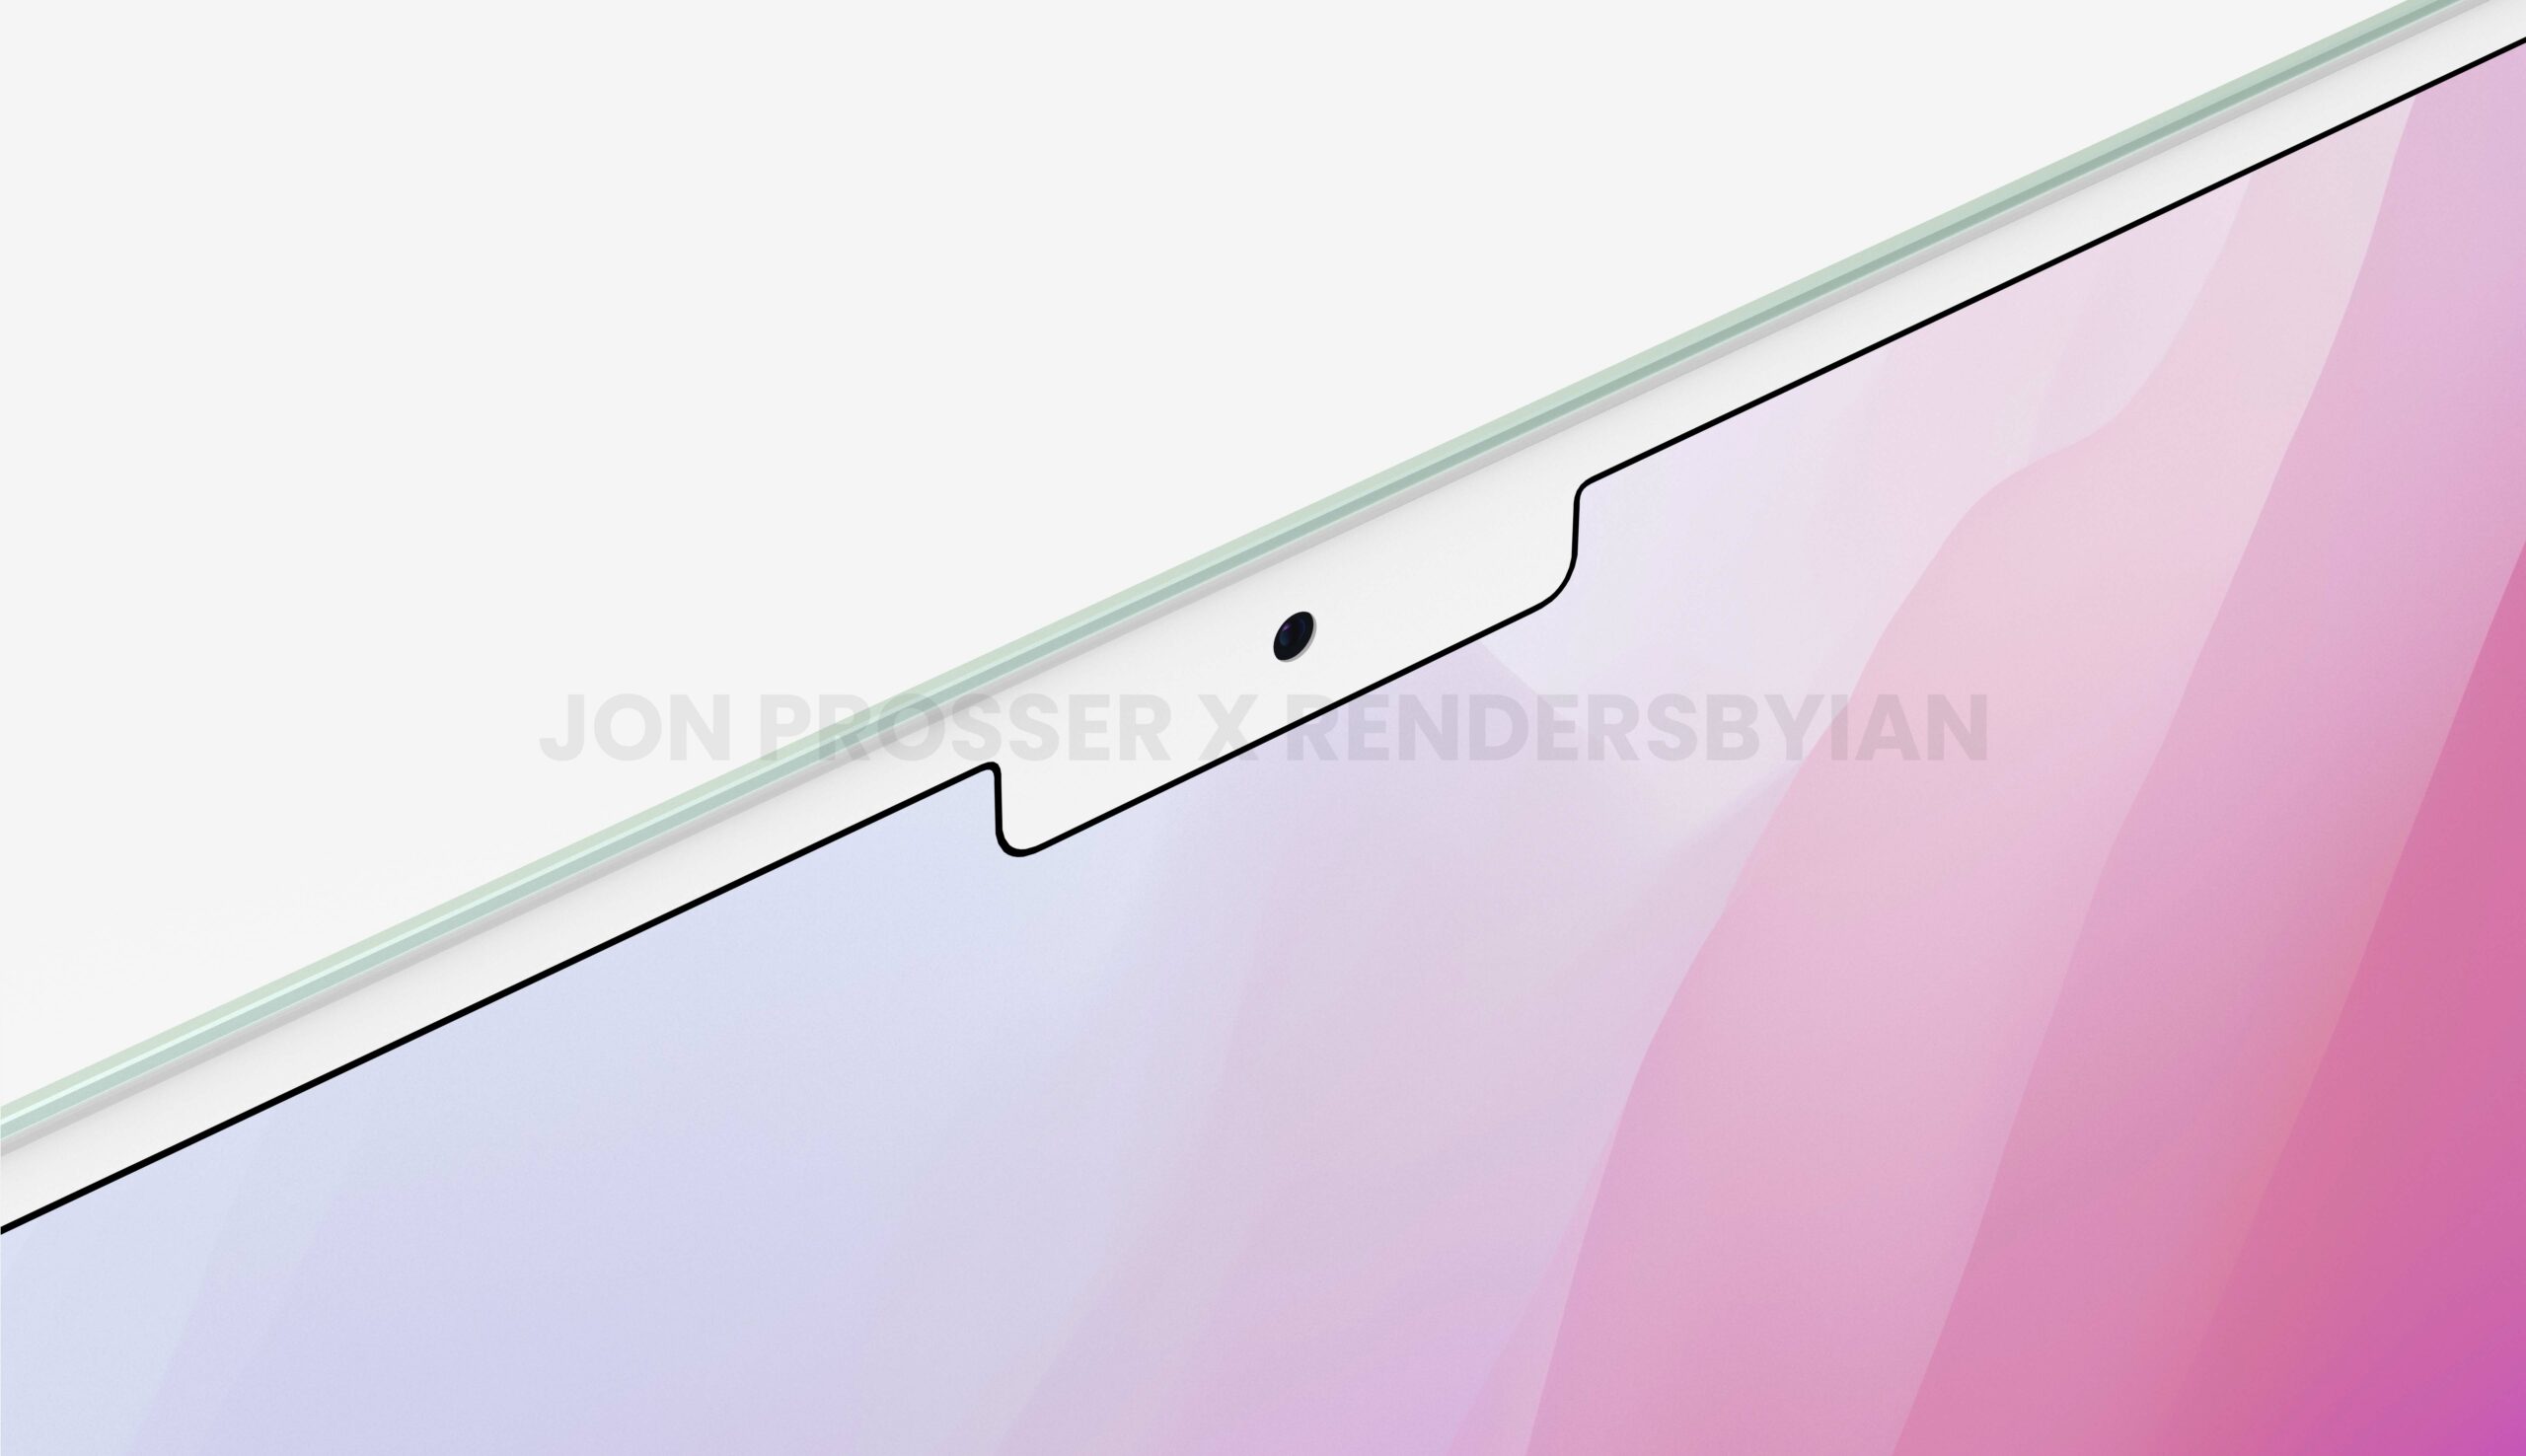 ชมภาพเรนเดอร์ล่าสุดของ MacBook Air ที่จะเปิดตัวในปี 2022 จากเจ้าพ่อข่าวลือ Jon Prosser 